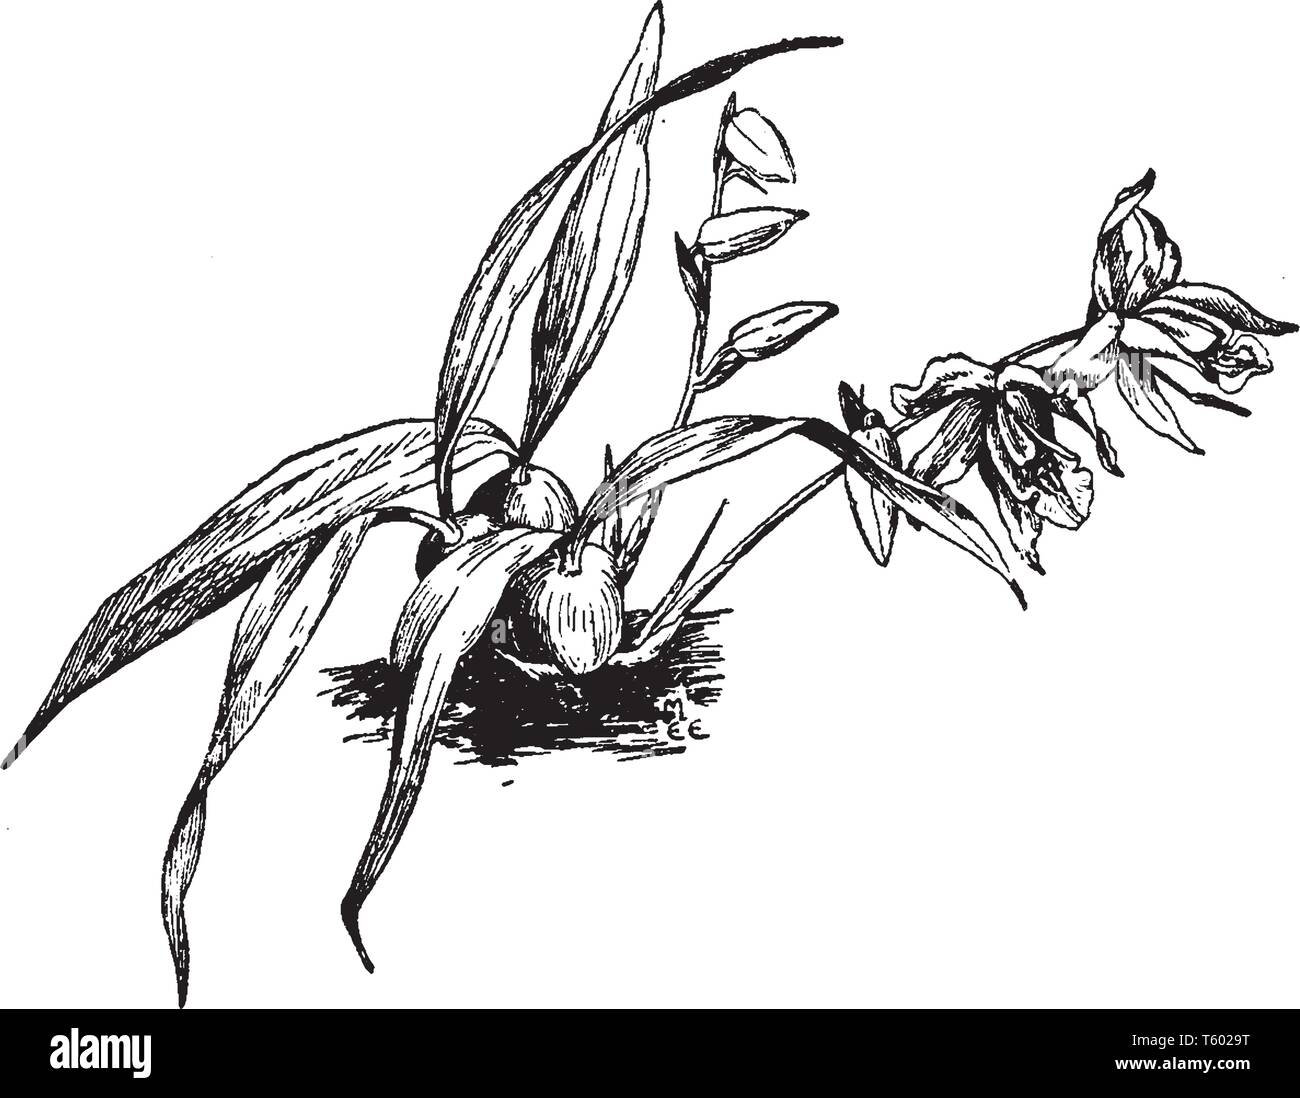 Coelogyne Cristata ist eine große Gattung der tropischen Asiatischen baumbewohnenden Orchideen hat meist gelben oder weißen Blüten mit membranaceous fällt, Vintage Linie d Stock Vektor